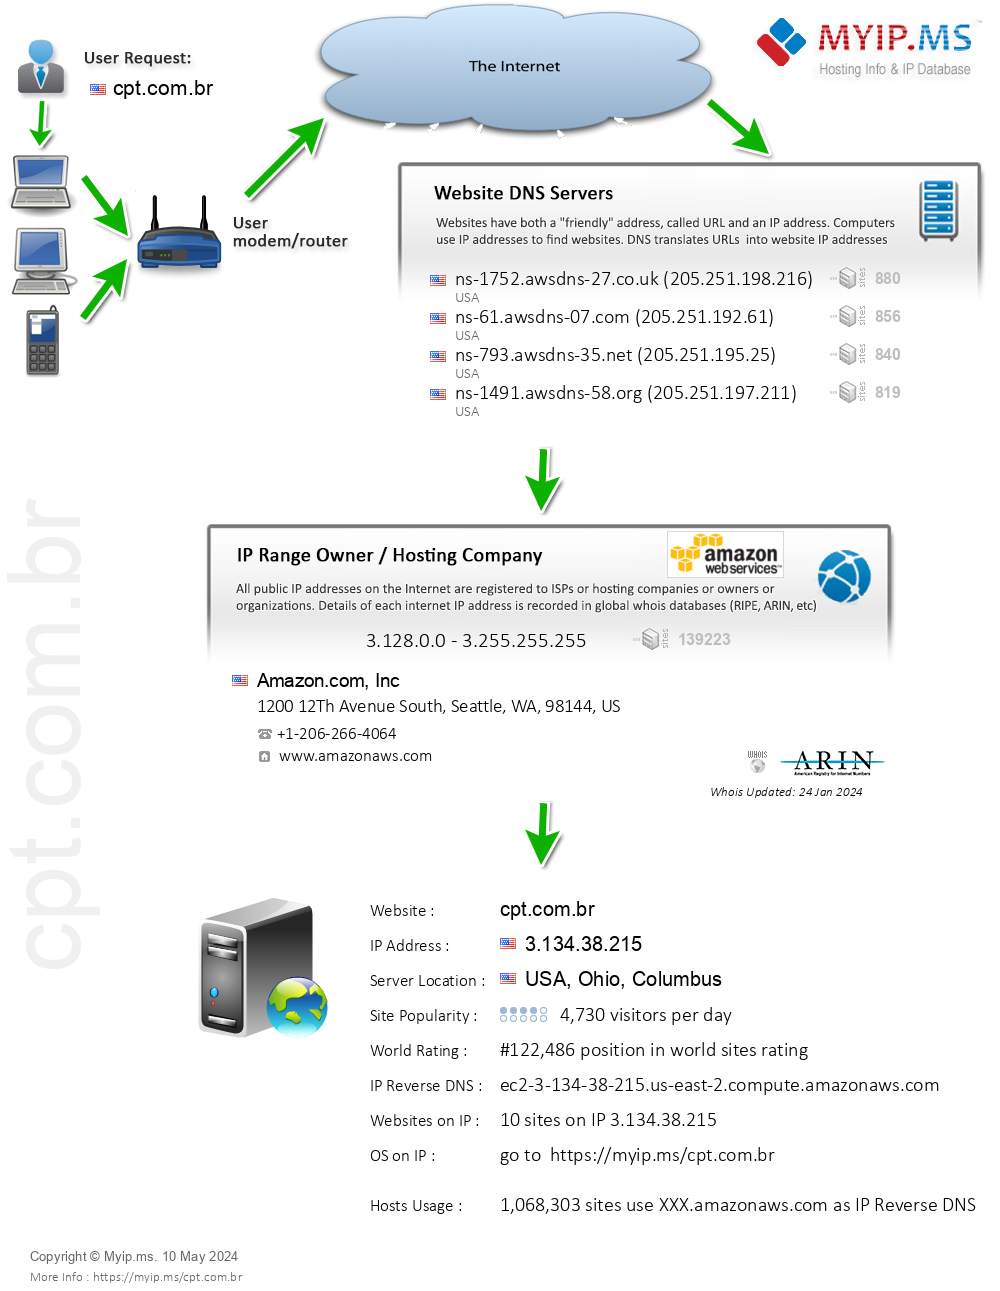 Cpt.com.br - Website Hosting Visual IP Diagram